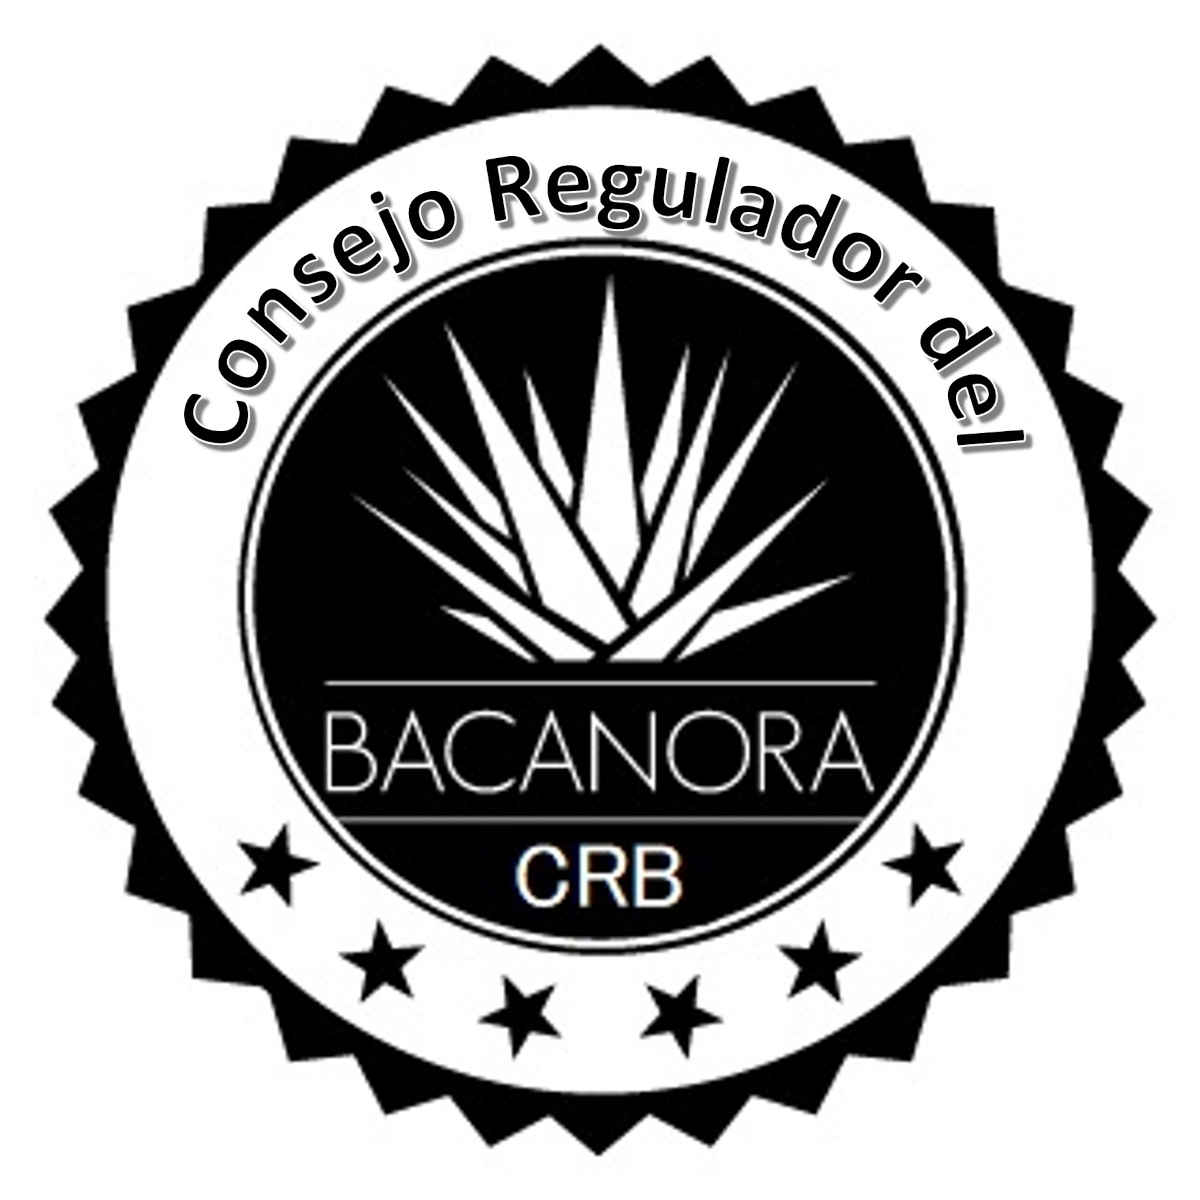 Consejo Regulador del Bacanora - Historia, trayectoria y objetivos